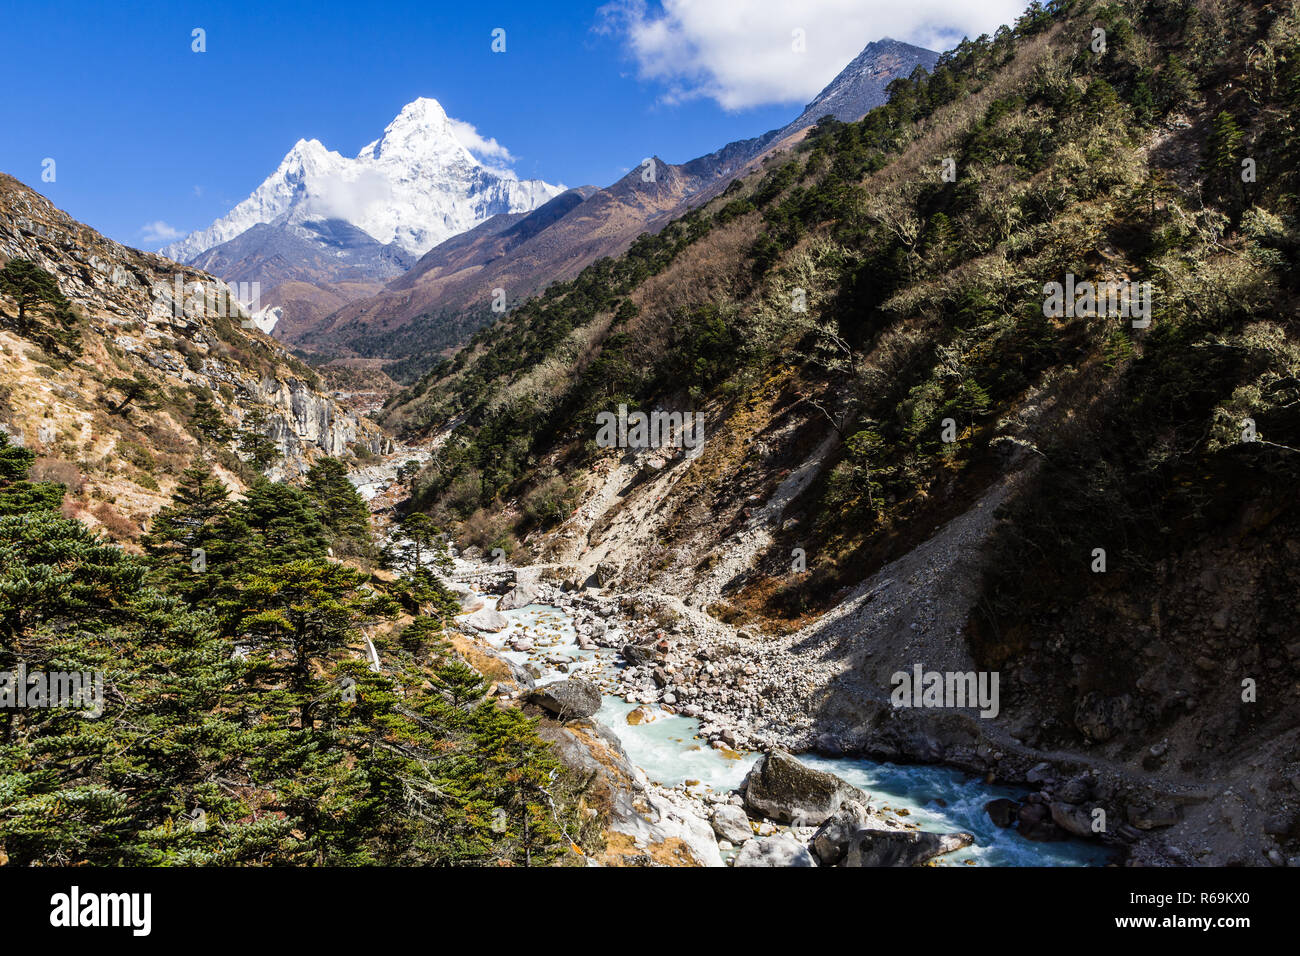 Vue sur l'Ama Dablam et une rivière glaciaire, Camp de base de l'Everest trek, parc national de Sagarmatha (Népal) Banque D'Images